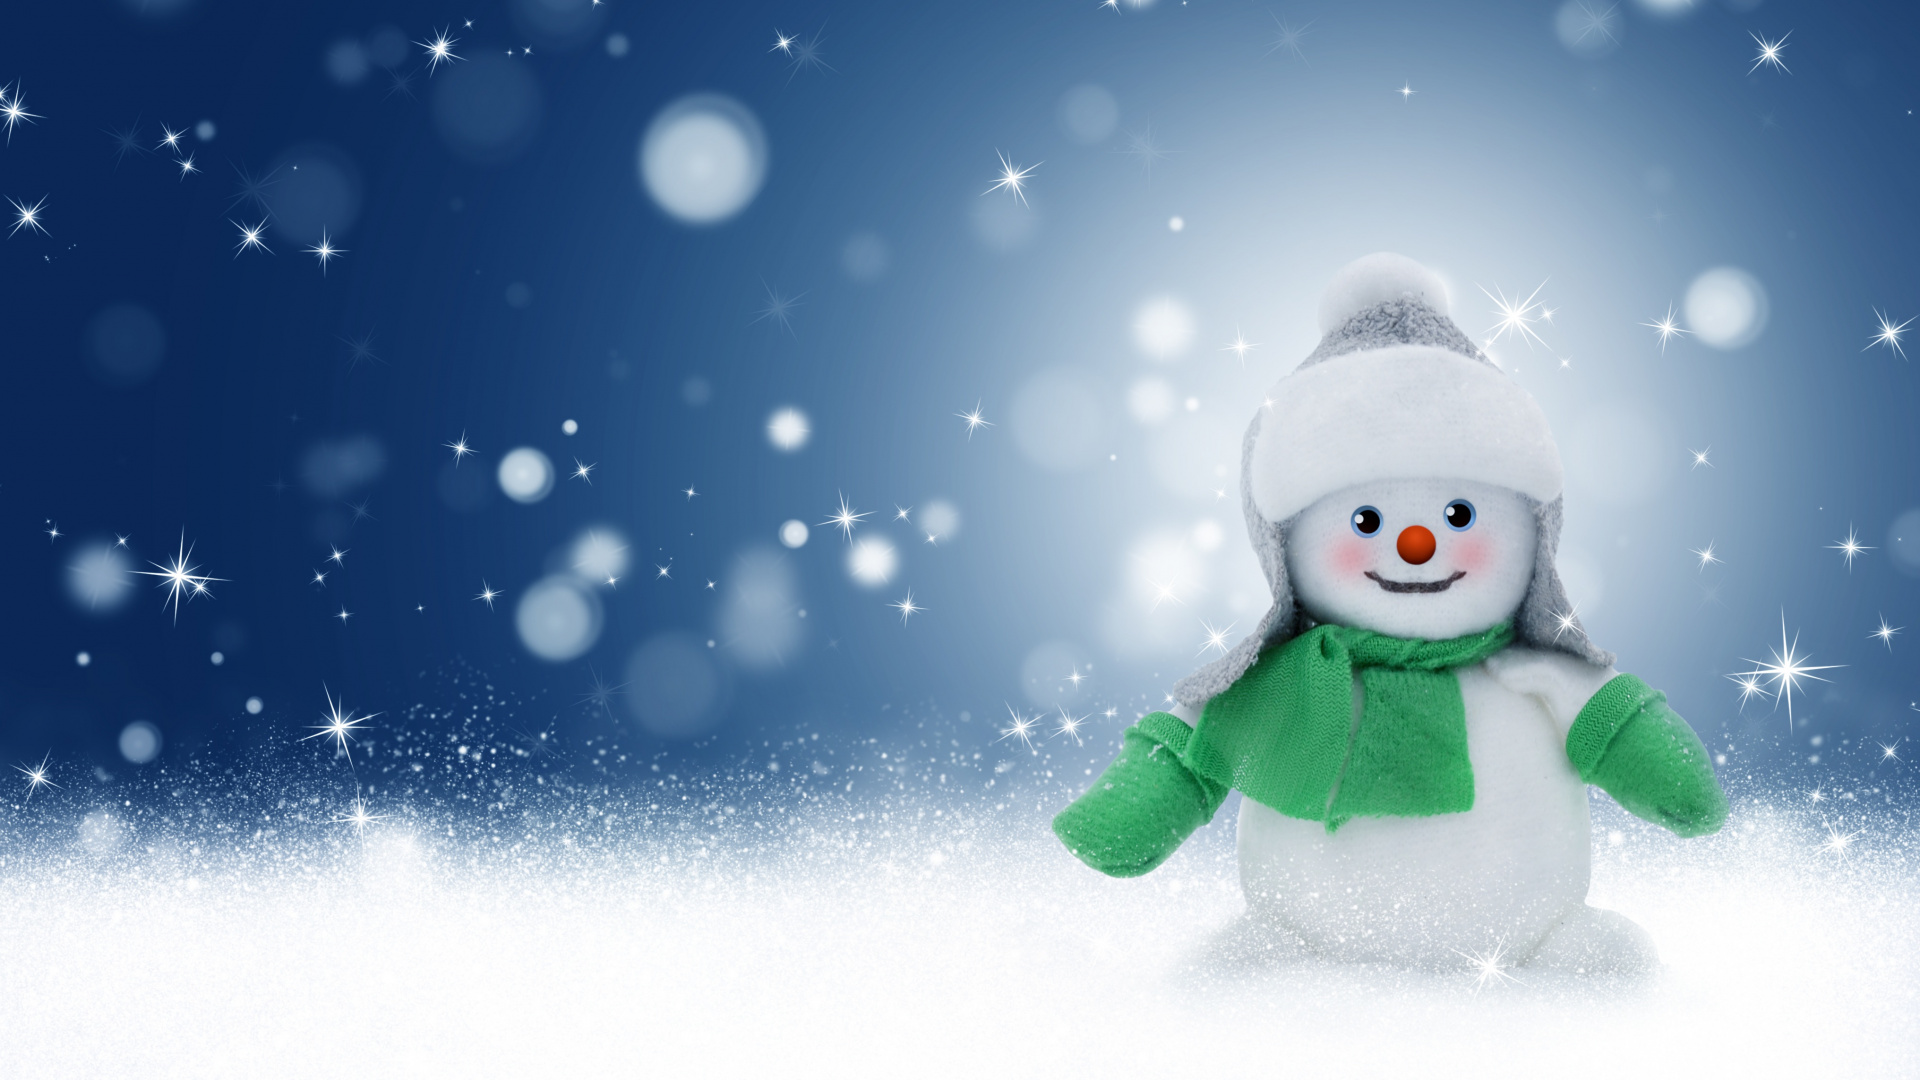 圣诞节那天, 冬天, 雪人, 圣诞前夕, 冻结 壁纸 1920x1080 允许